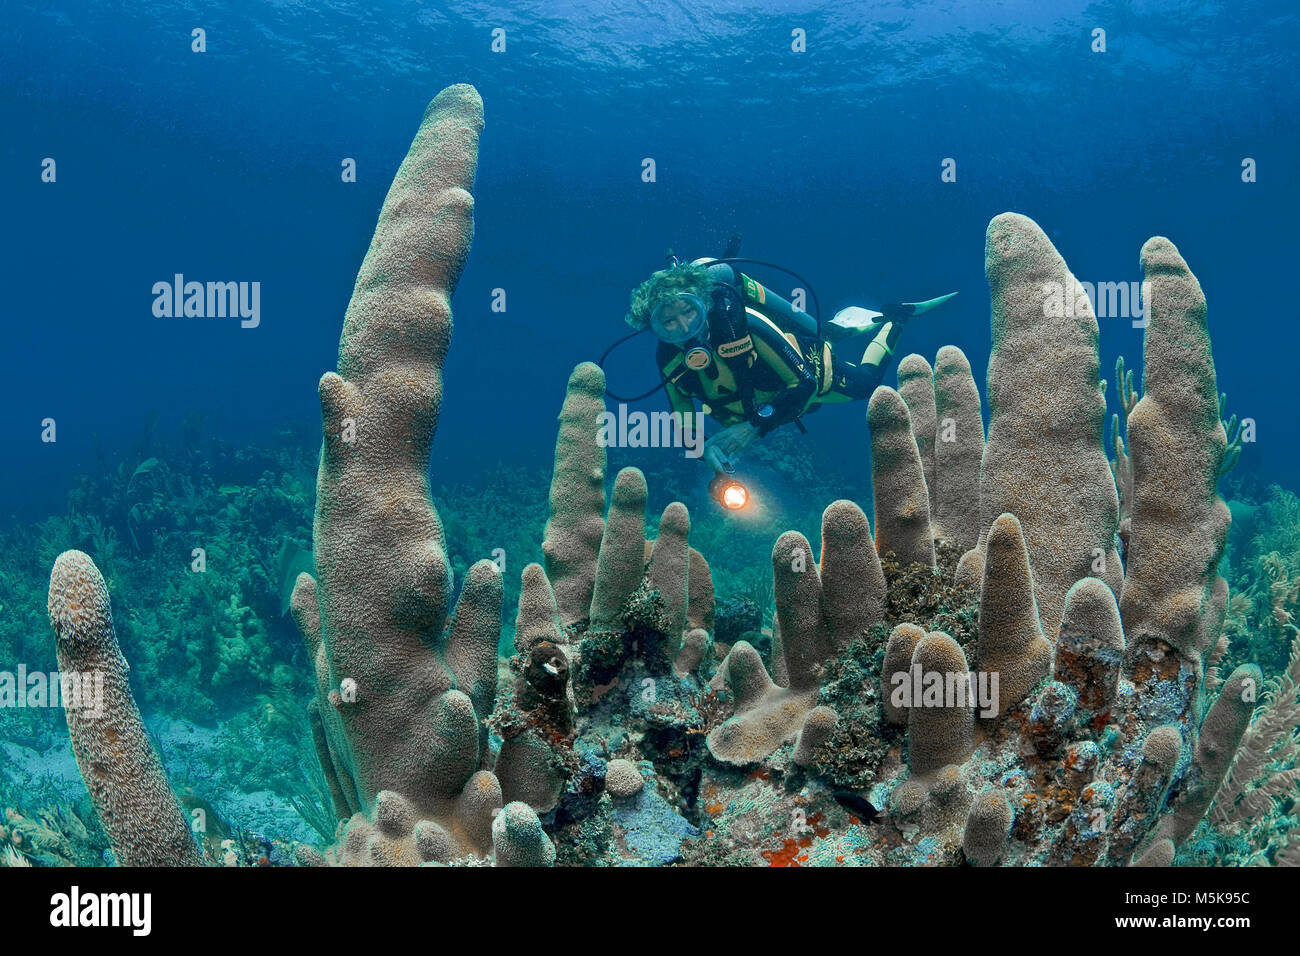 Scuba Diver in corrispondenza di un pilastro coral (Dendrogyra cylindrus), scogliera corallina caraibica di Palmetto Bay, Roatan Island, Bay Islands in Honduras Caraibi Foto Stock